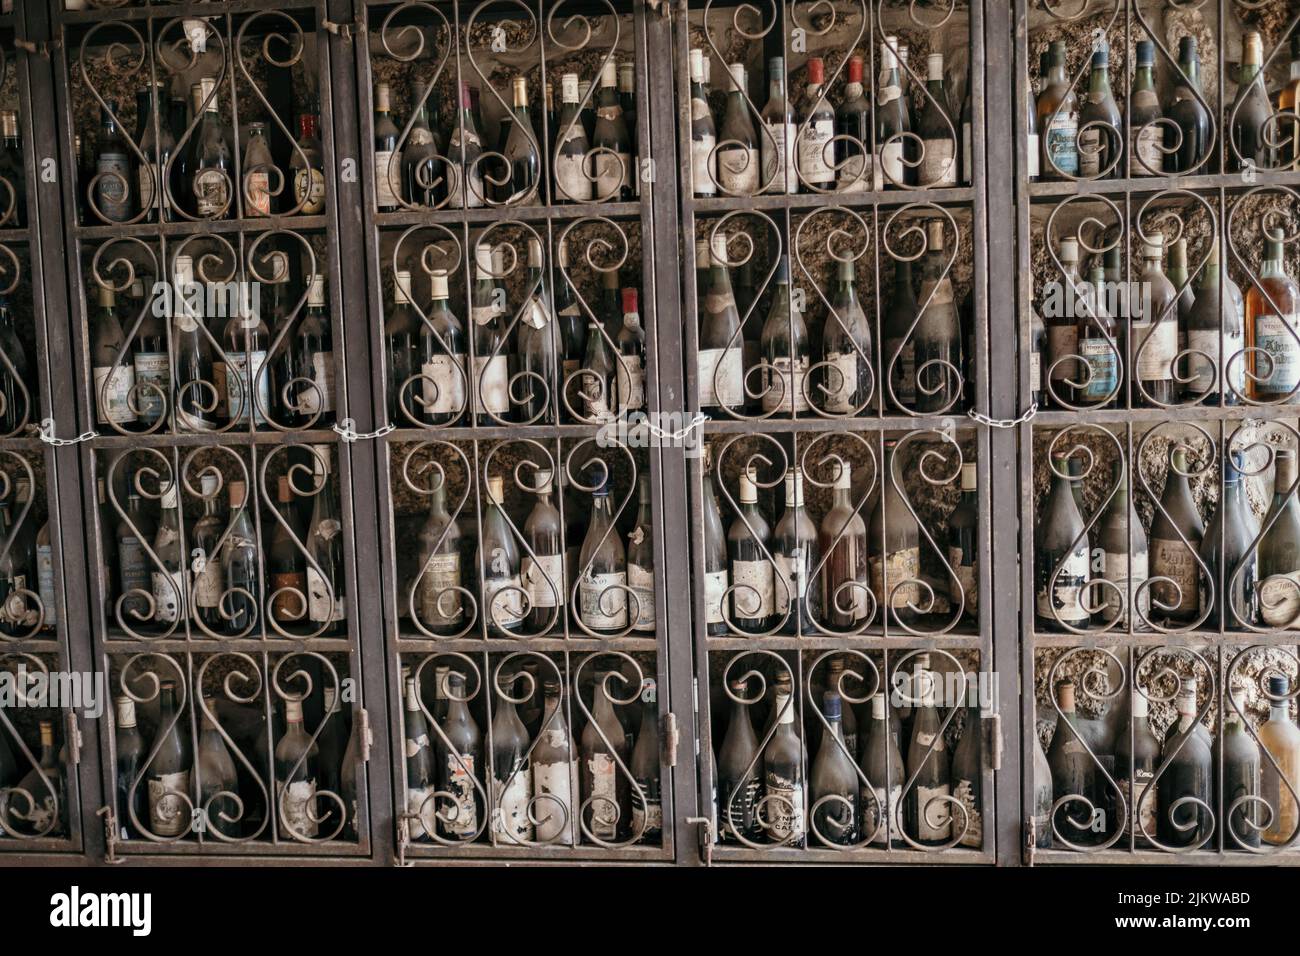 Un gros plan de vieilles bouteilles de vin sur une étagère vintage Banque D'Images